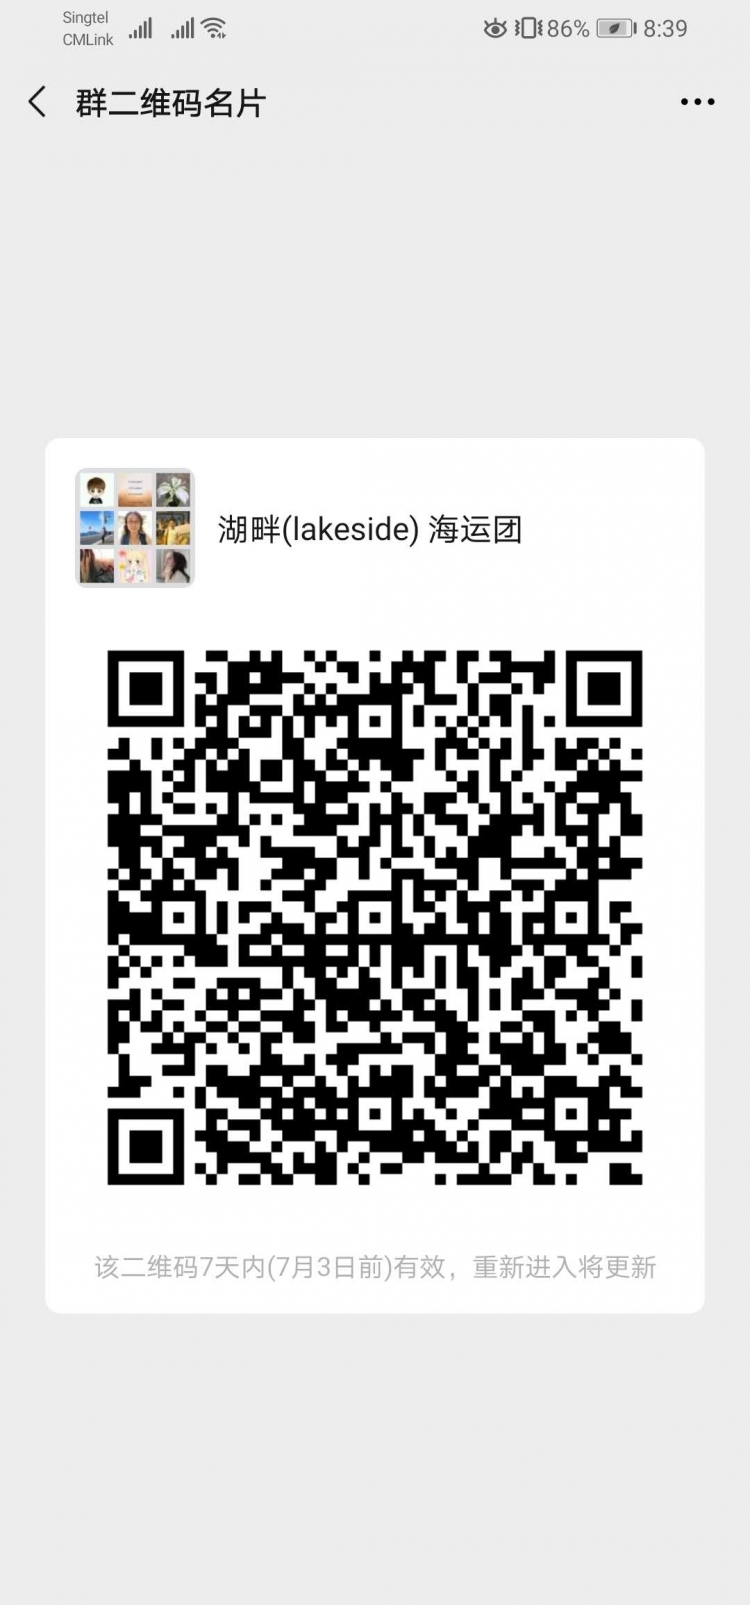 WeChat Image_20200626084022.jpg